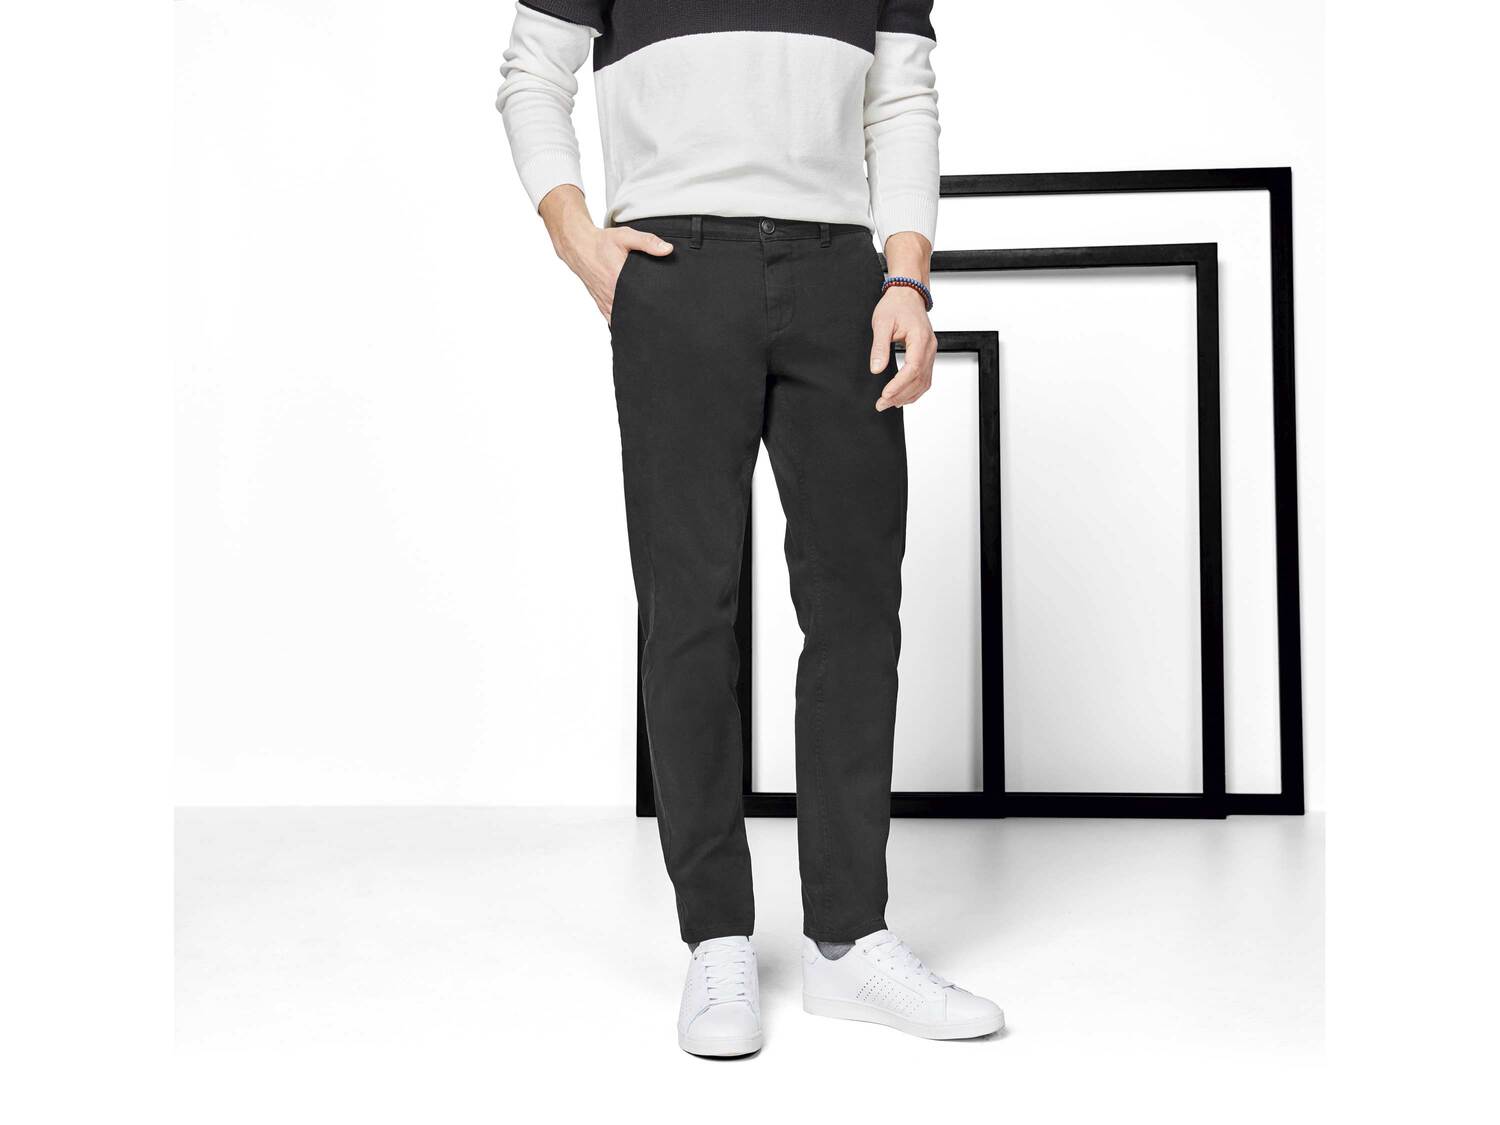 Spodnie męskie Livergy, cena 44,99 PLN 
- rozmiary: 48-56
- 98% bawełny, 2% elastanu ...